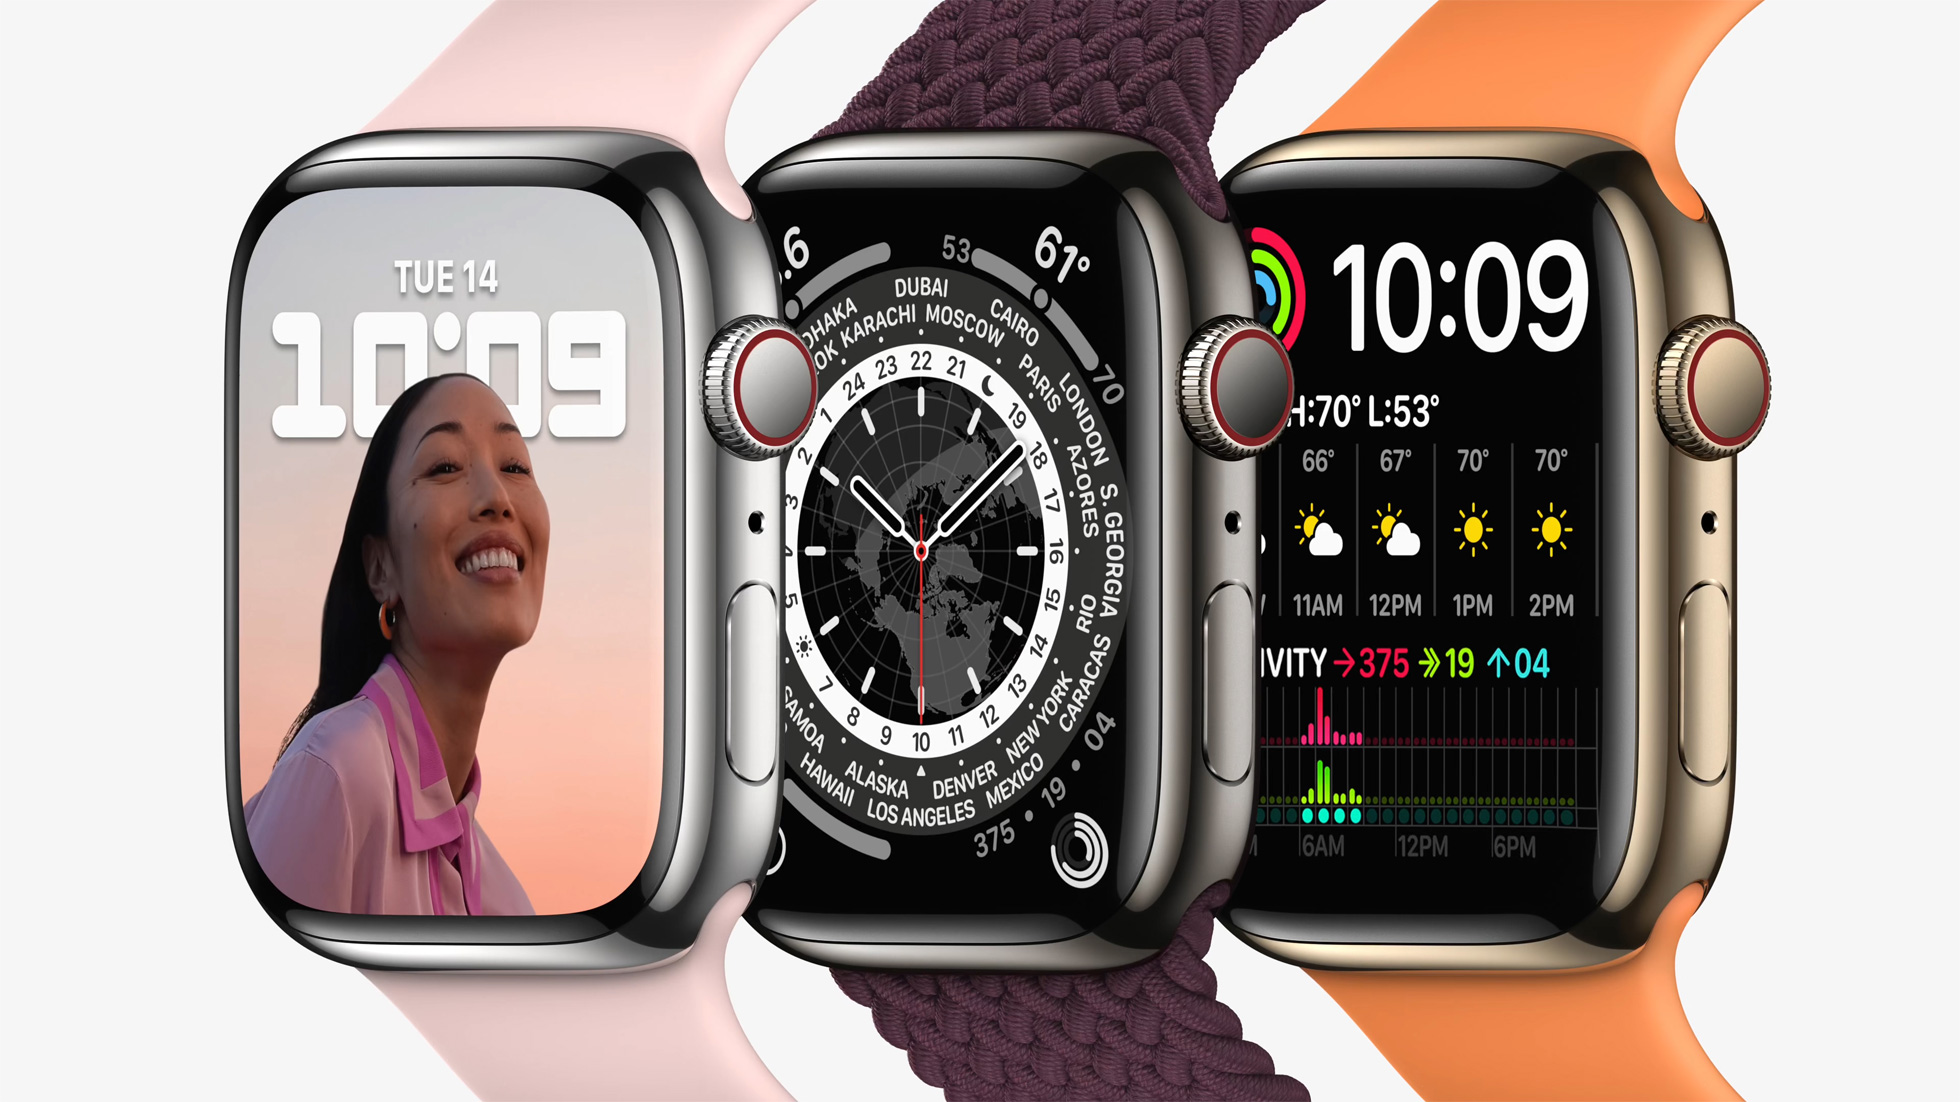 Deretan Keunggulan Apple Watch Untuk Menunjang Kegiatan Sehari-Hari